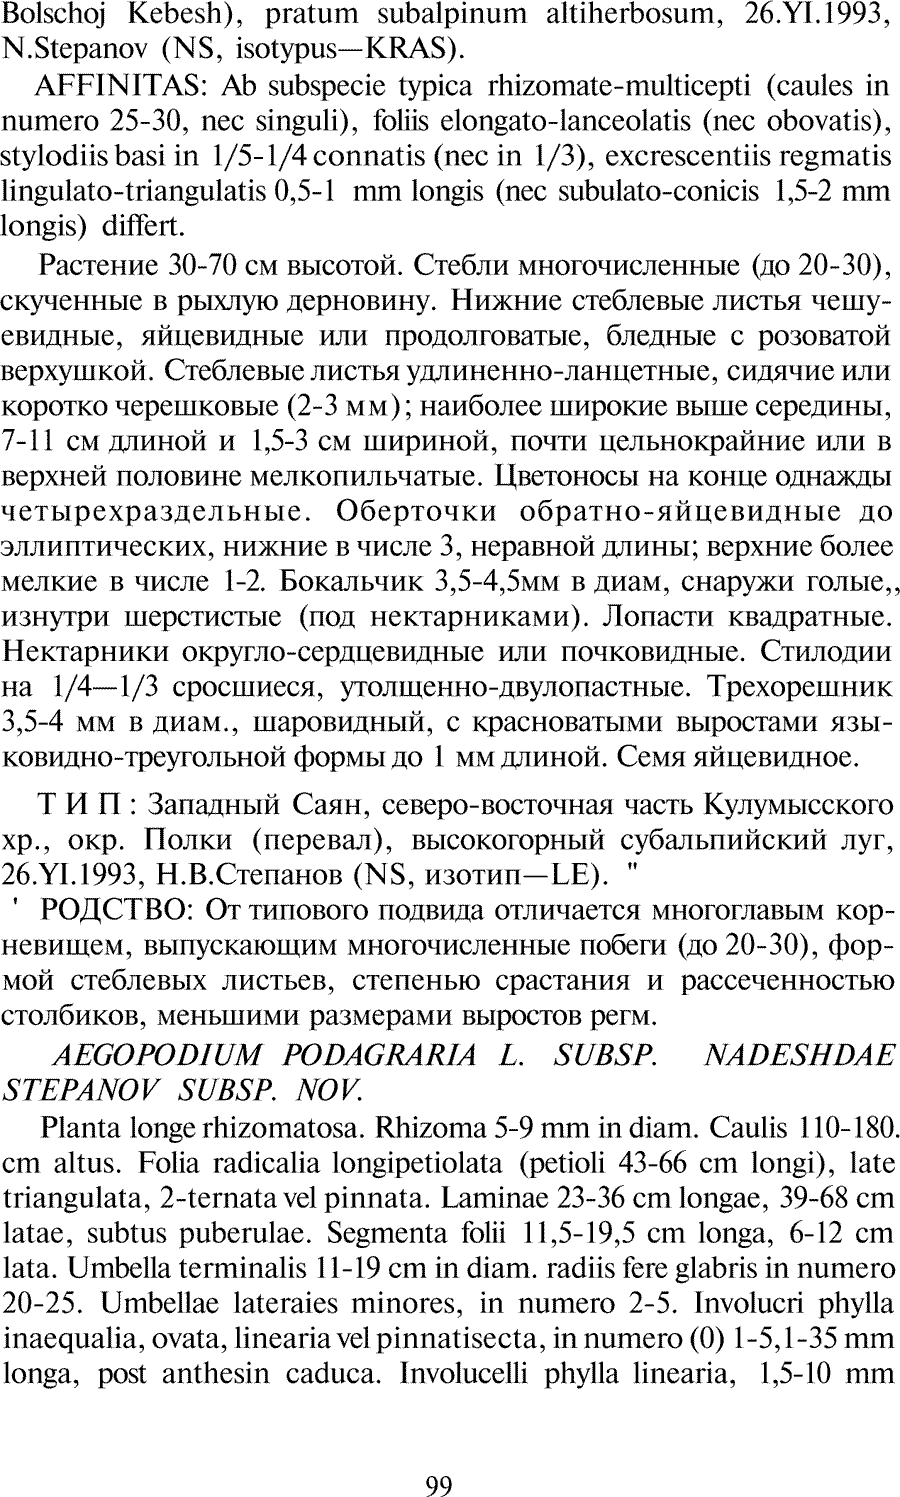 https://forum.plantarium.ru/misc.php?action=pun_attachment&amp;item=27779